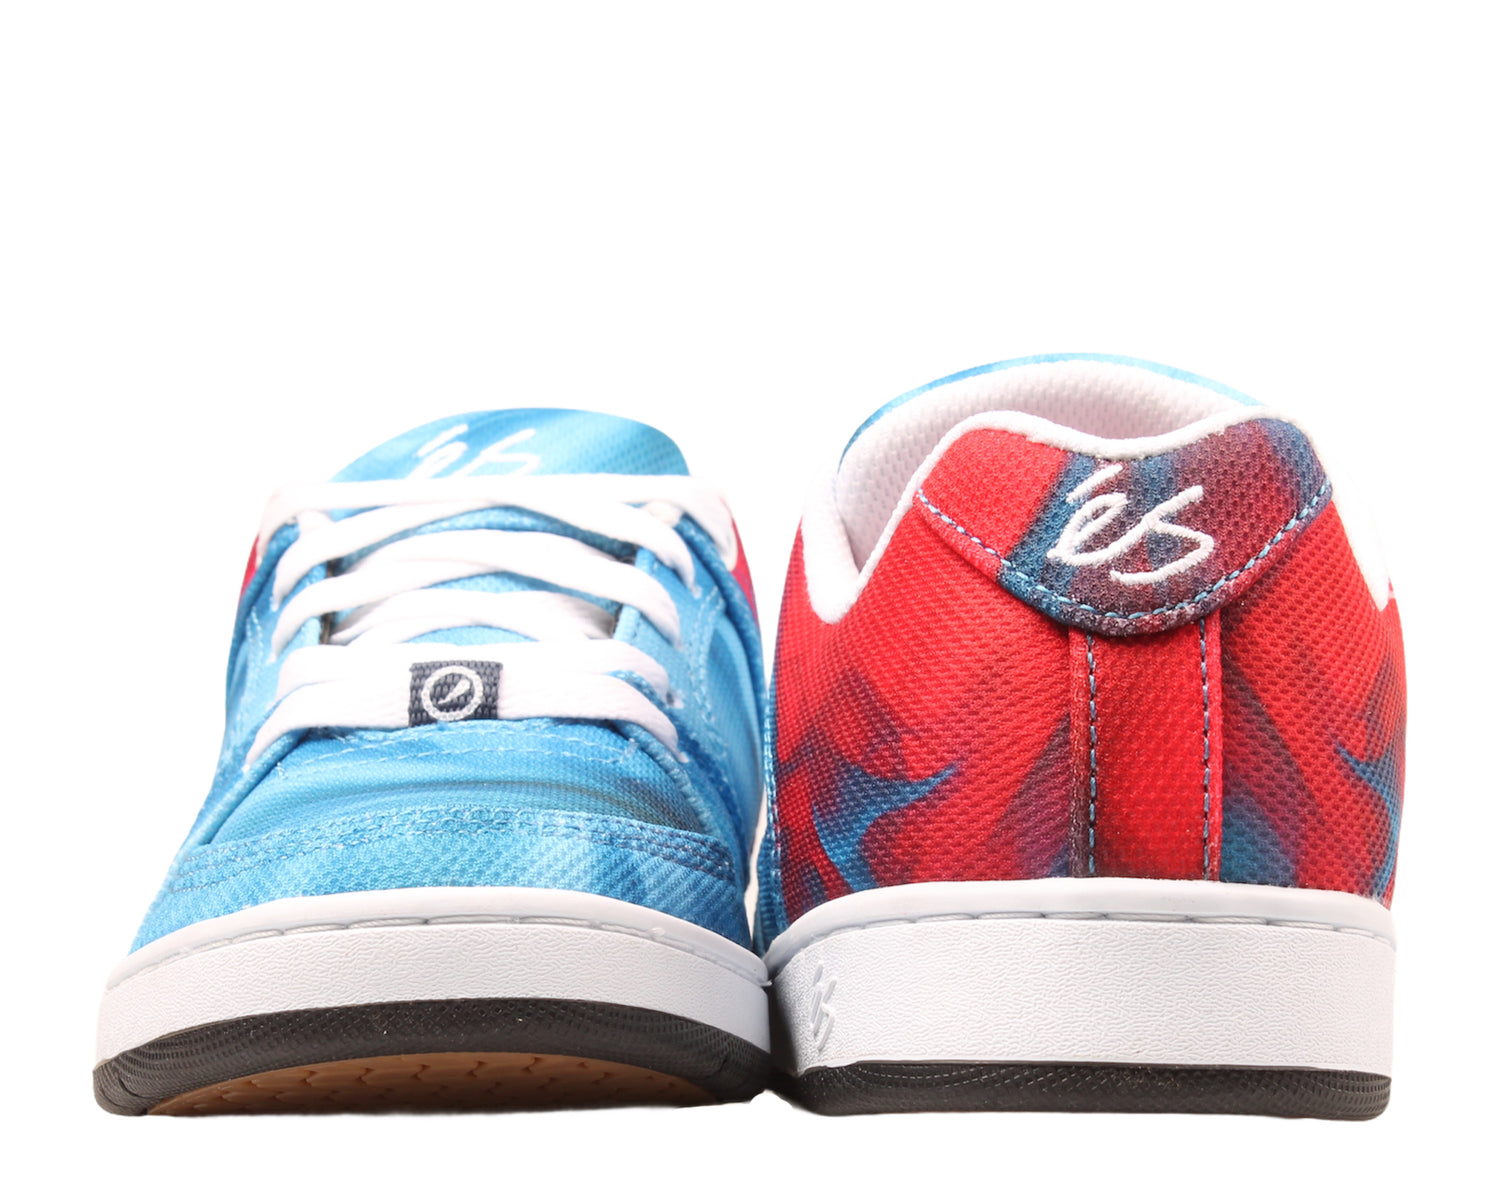 eS Footwear Accel Slim Men's Skateboard Sneakers